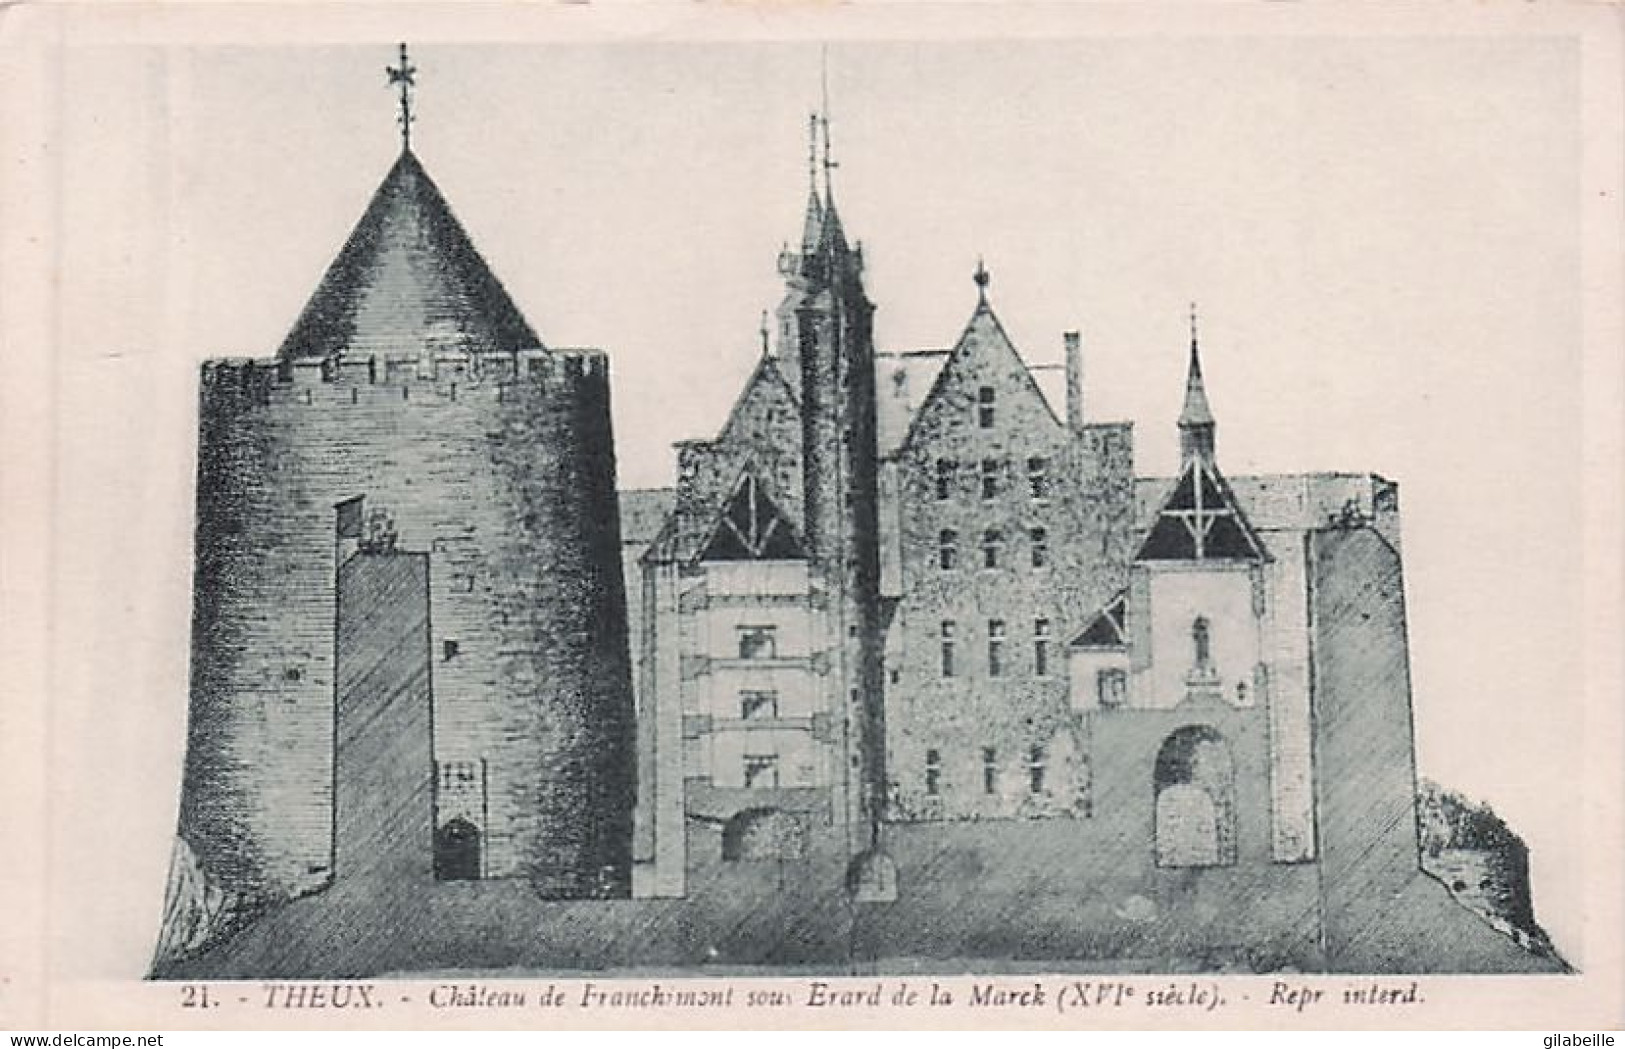 THEUX - chateau de Franchimont - LOT 6 CARTES